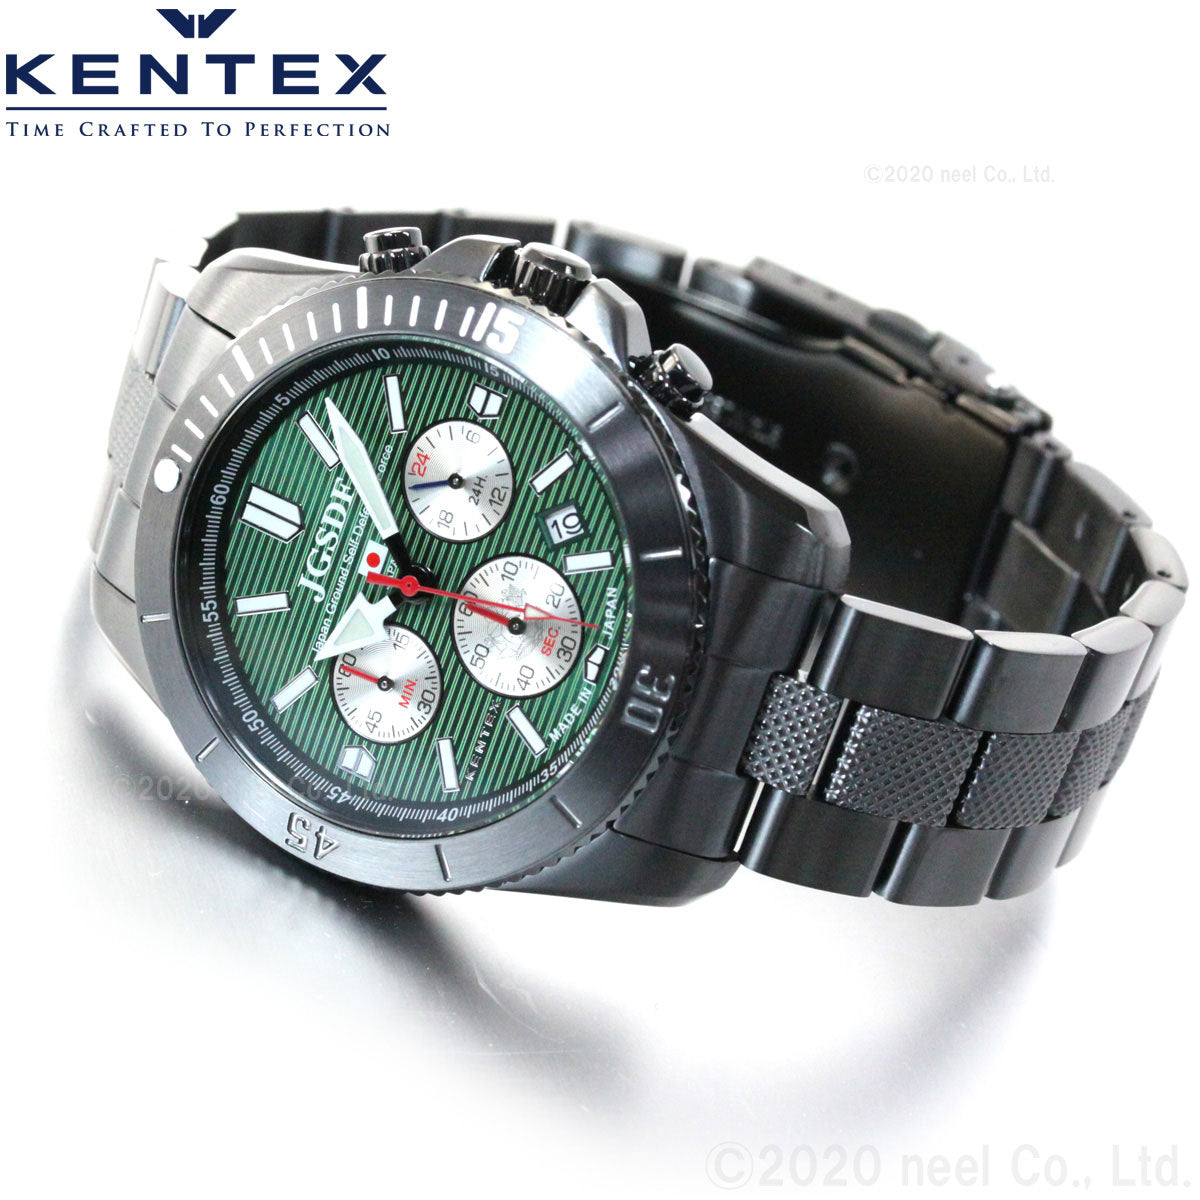 ケンテックス KENTEX 腕時計 メンズ JSDF PRO 陸上自衛隊 プロフェッショナルモデル クロノグラフ S690M-01【正規品】【送料無料】【サイズ調整無料】